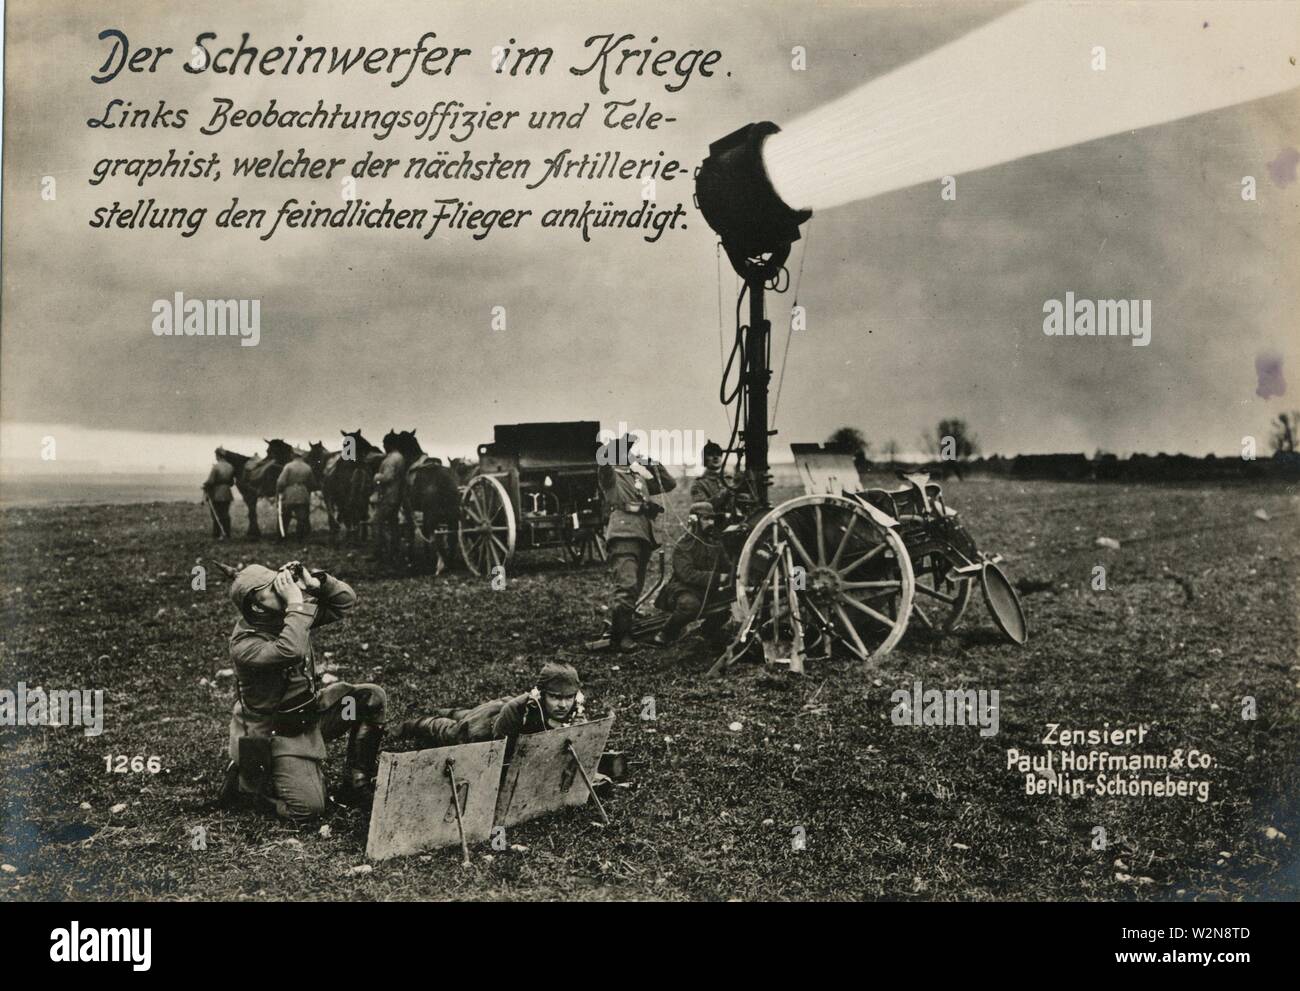 Der Scheinwerfer im Kriege. Links Beobachtungsoffizier und Telegraphist, welcher der nächsten Artilleriestellung den feindlichen Flieger ankündigt. Stock Photo